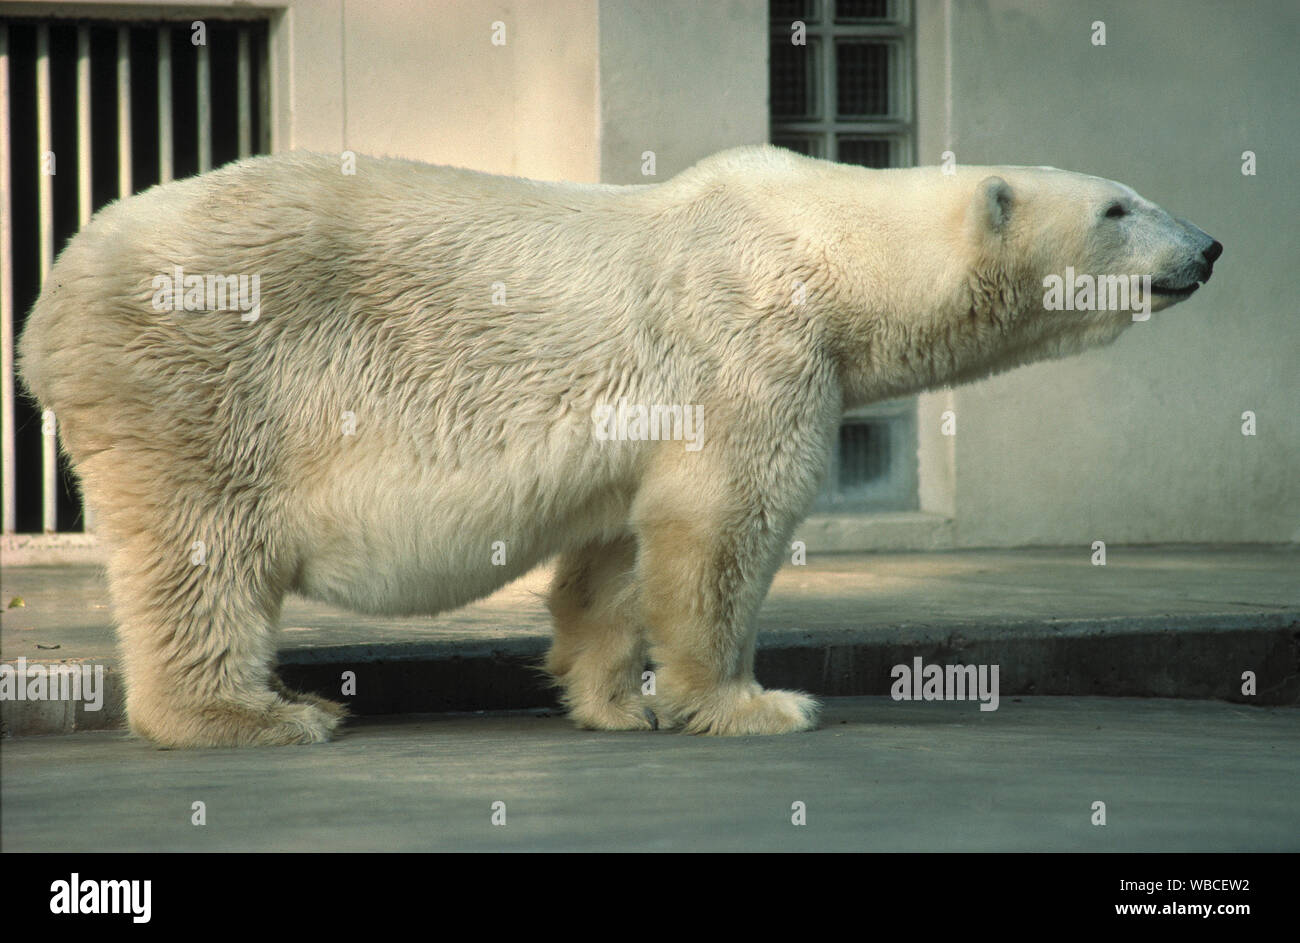 Orso polare (Ursus maritimus), in un enclosure obsoleti in un giardino zoologico, serraglio. Senza fantasia, sterile, priva di arricchimento ambientale. Europa orientale.​ Foto Stock